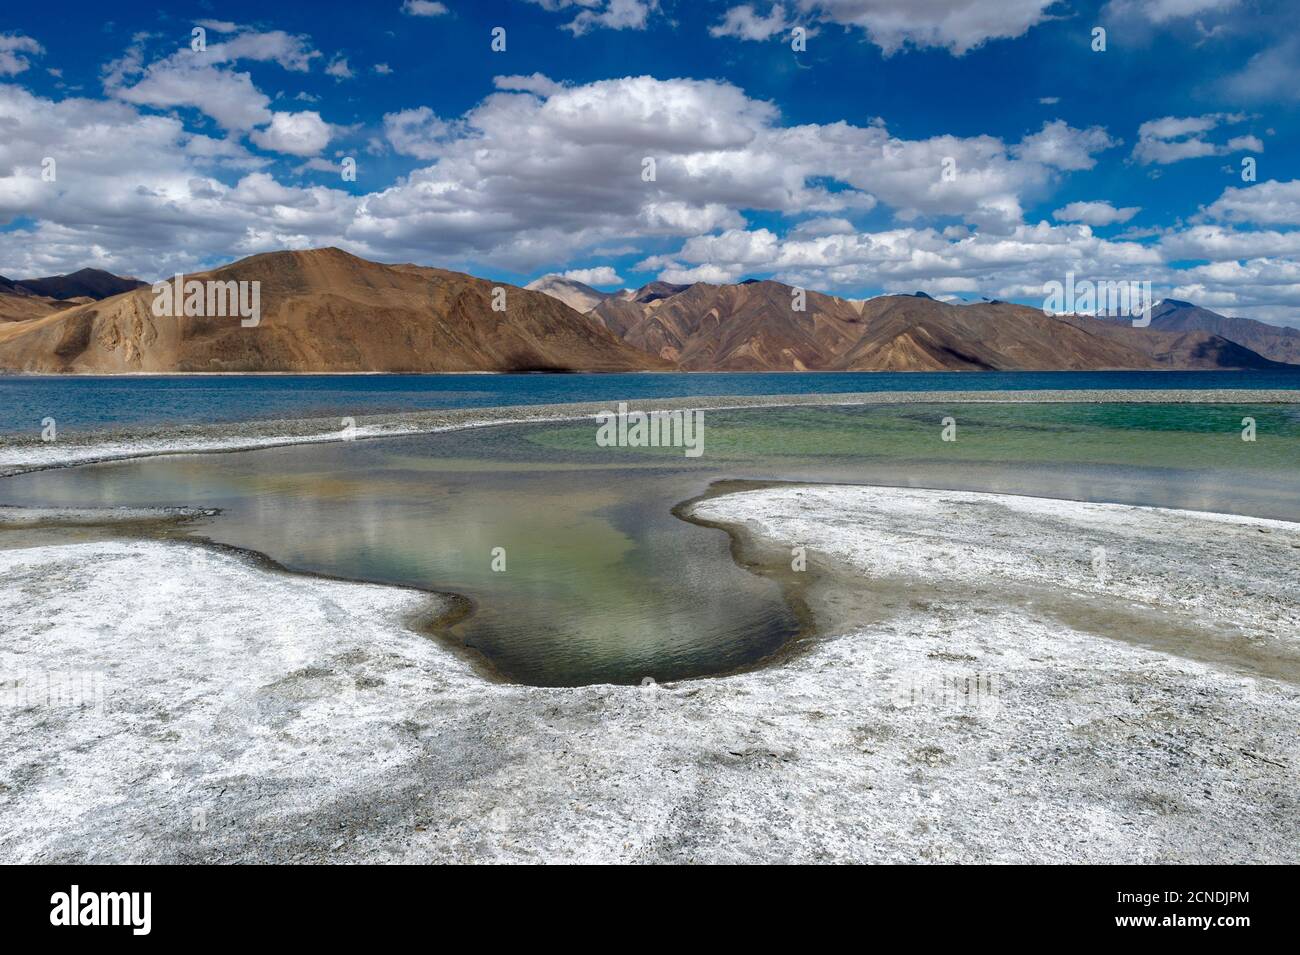 Formazione di sale sulle rive del lago Pangong, Ladakh, India. Armyman al lago Pangong, Ladakh, India. Pangong TSO è un lago endorheic nell'Himalaya Foto Stock